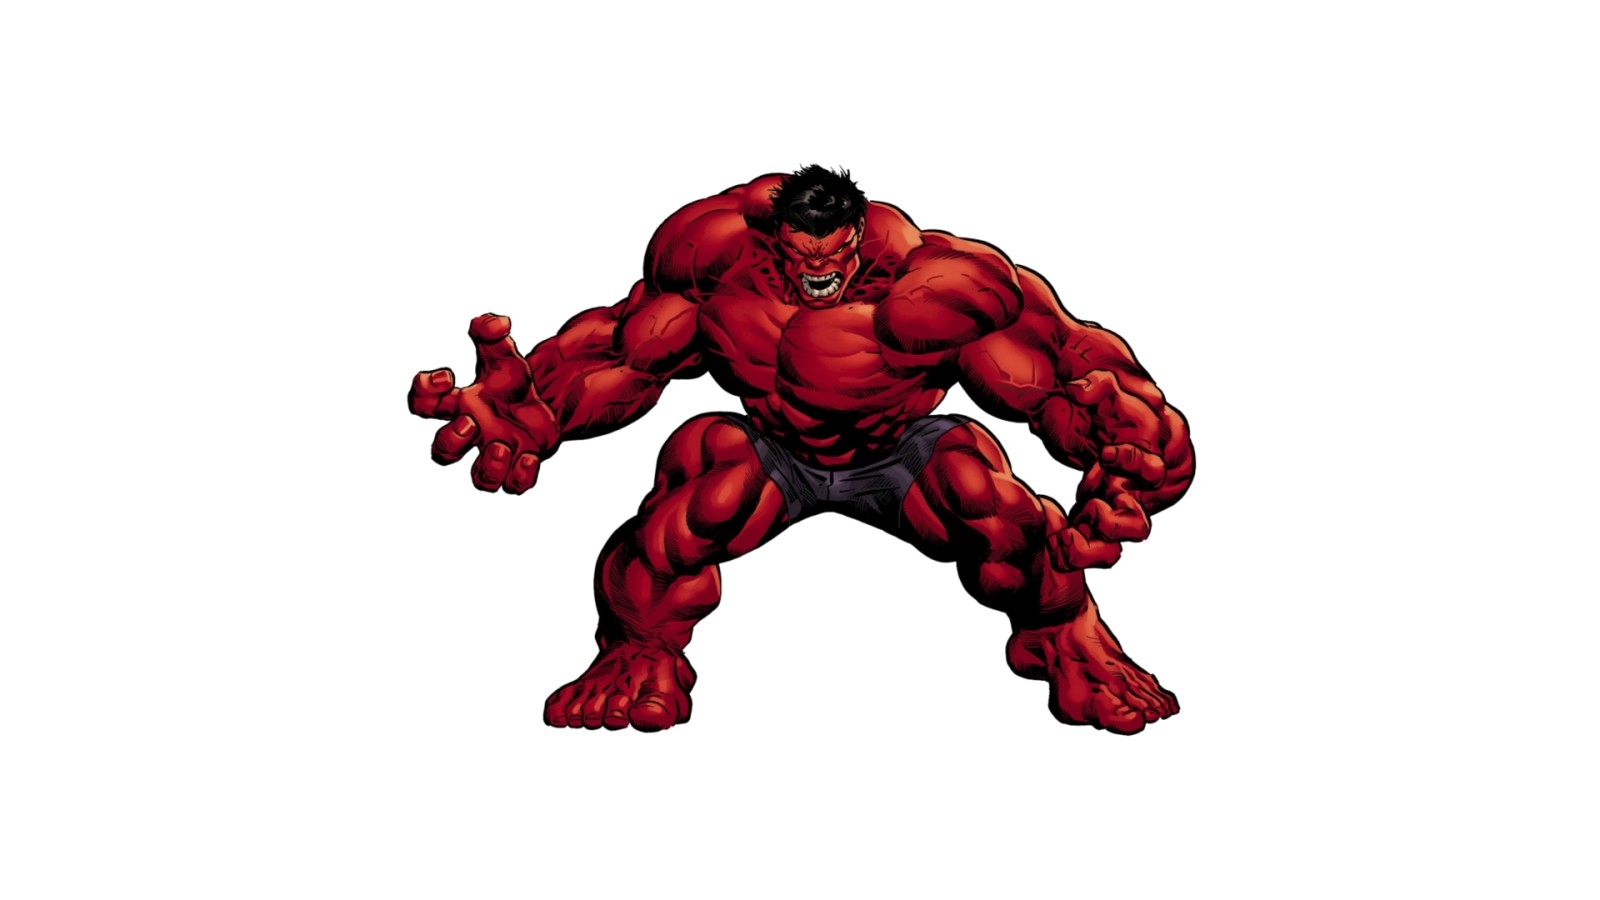 tư thế, quyền lực, Hulk đỏ